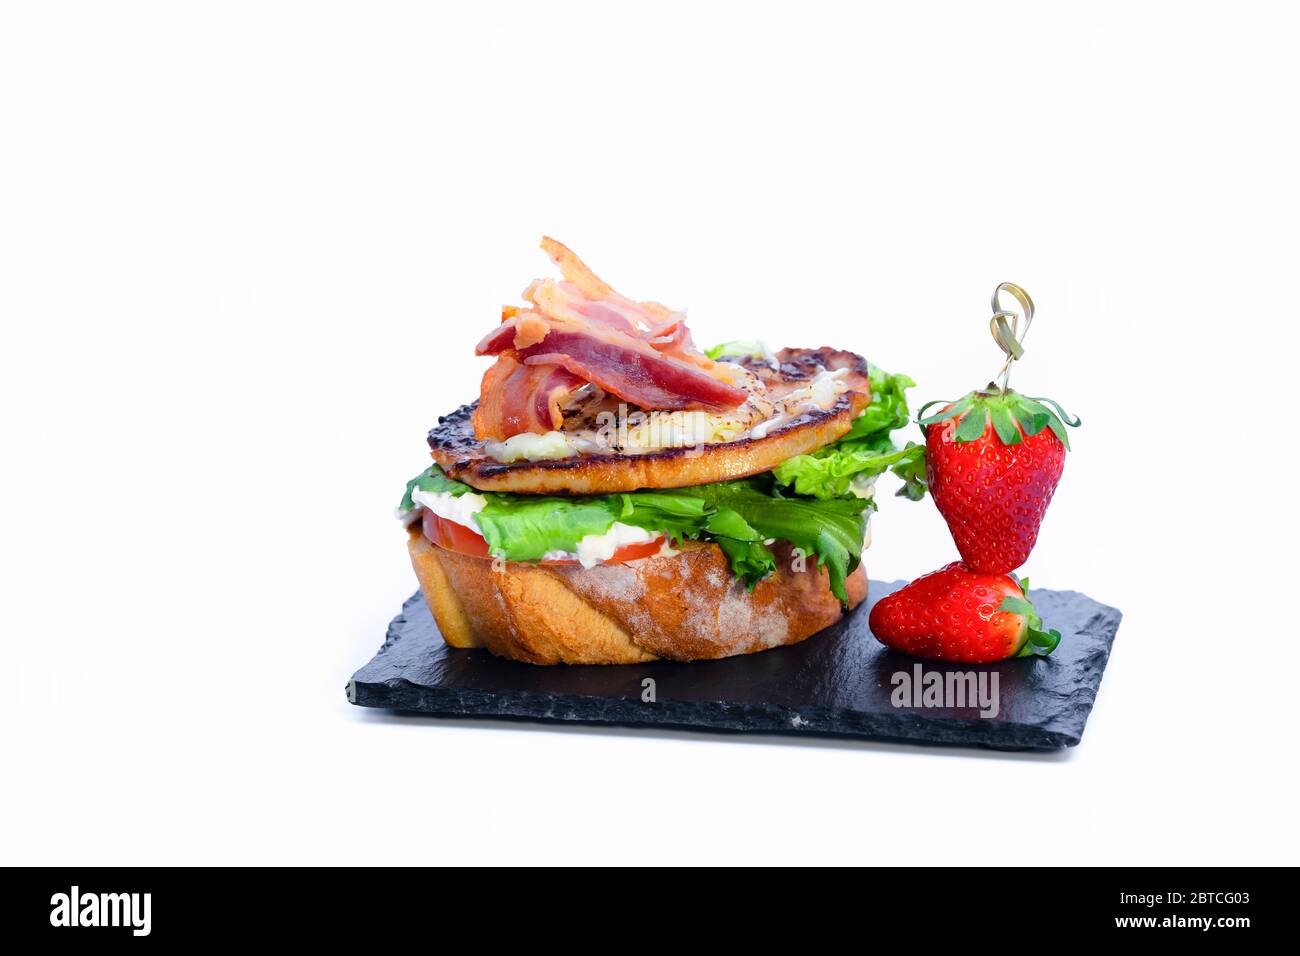 Nahaufnahme eines köstlichen offenen Sandwich mit verschiedenen Fleisch, Gemüse und Käse neben frischen Erdbeeren auf einem dunklen Teller auf hellem Hintergrund. spani Stockfoto